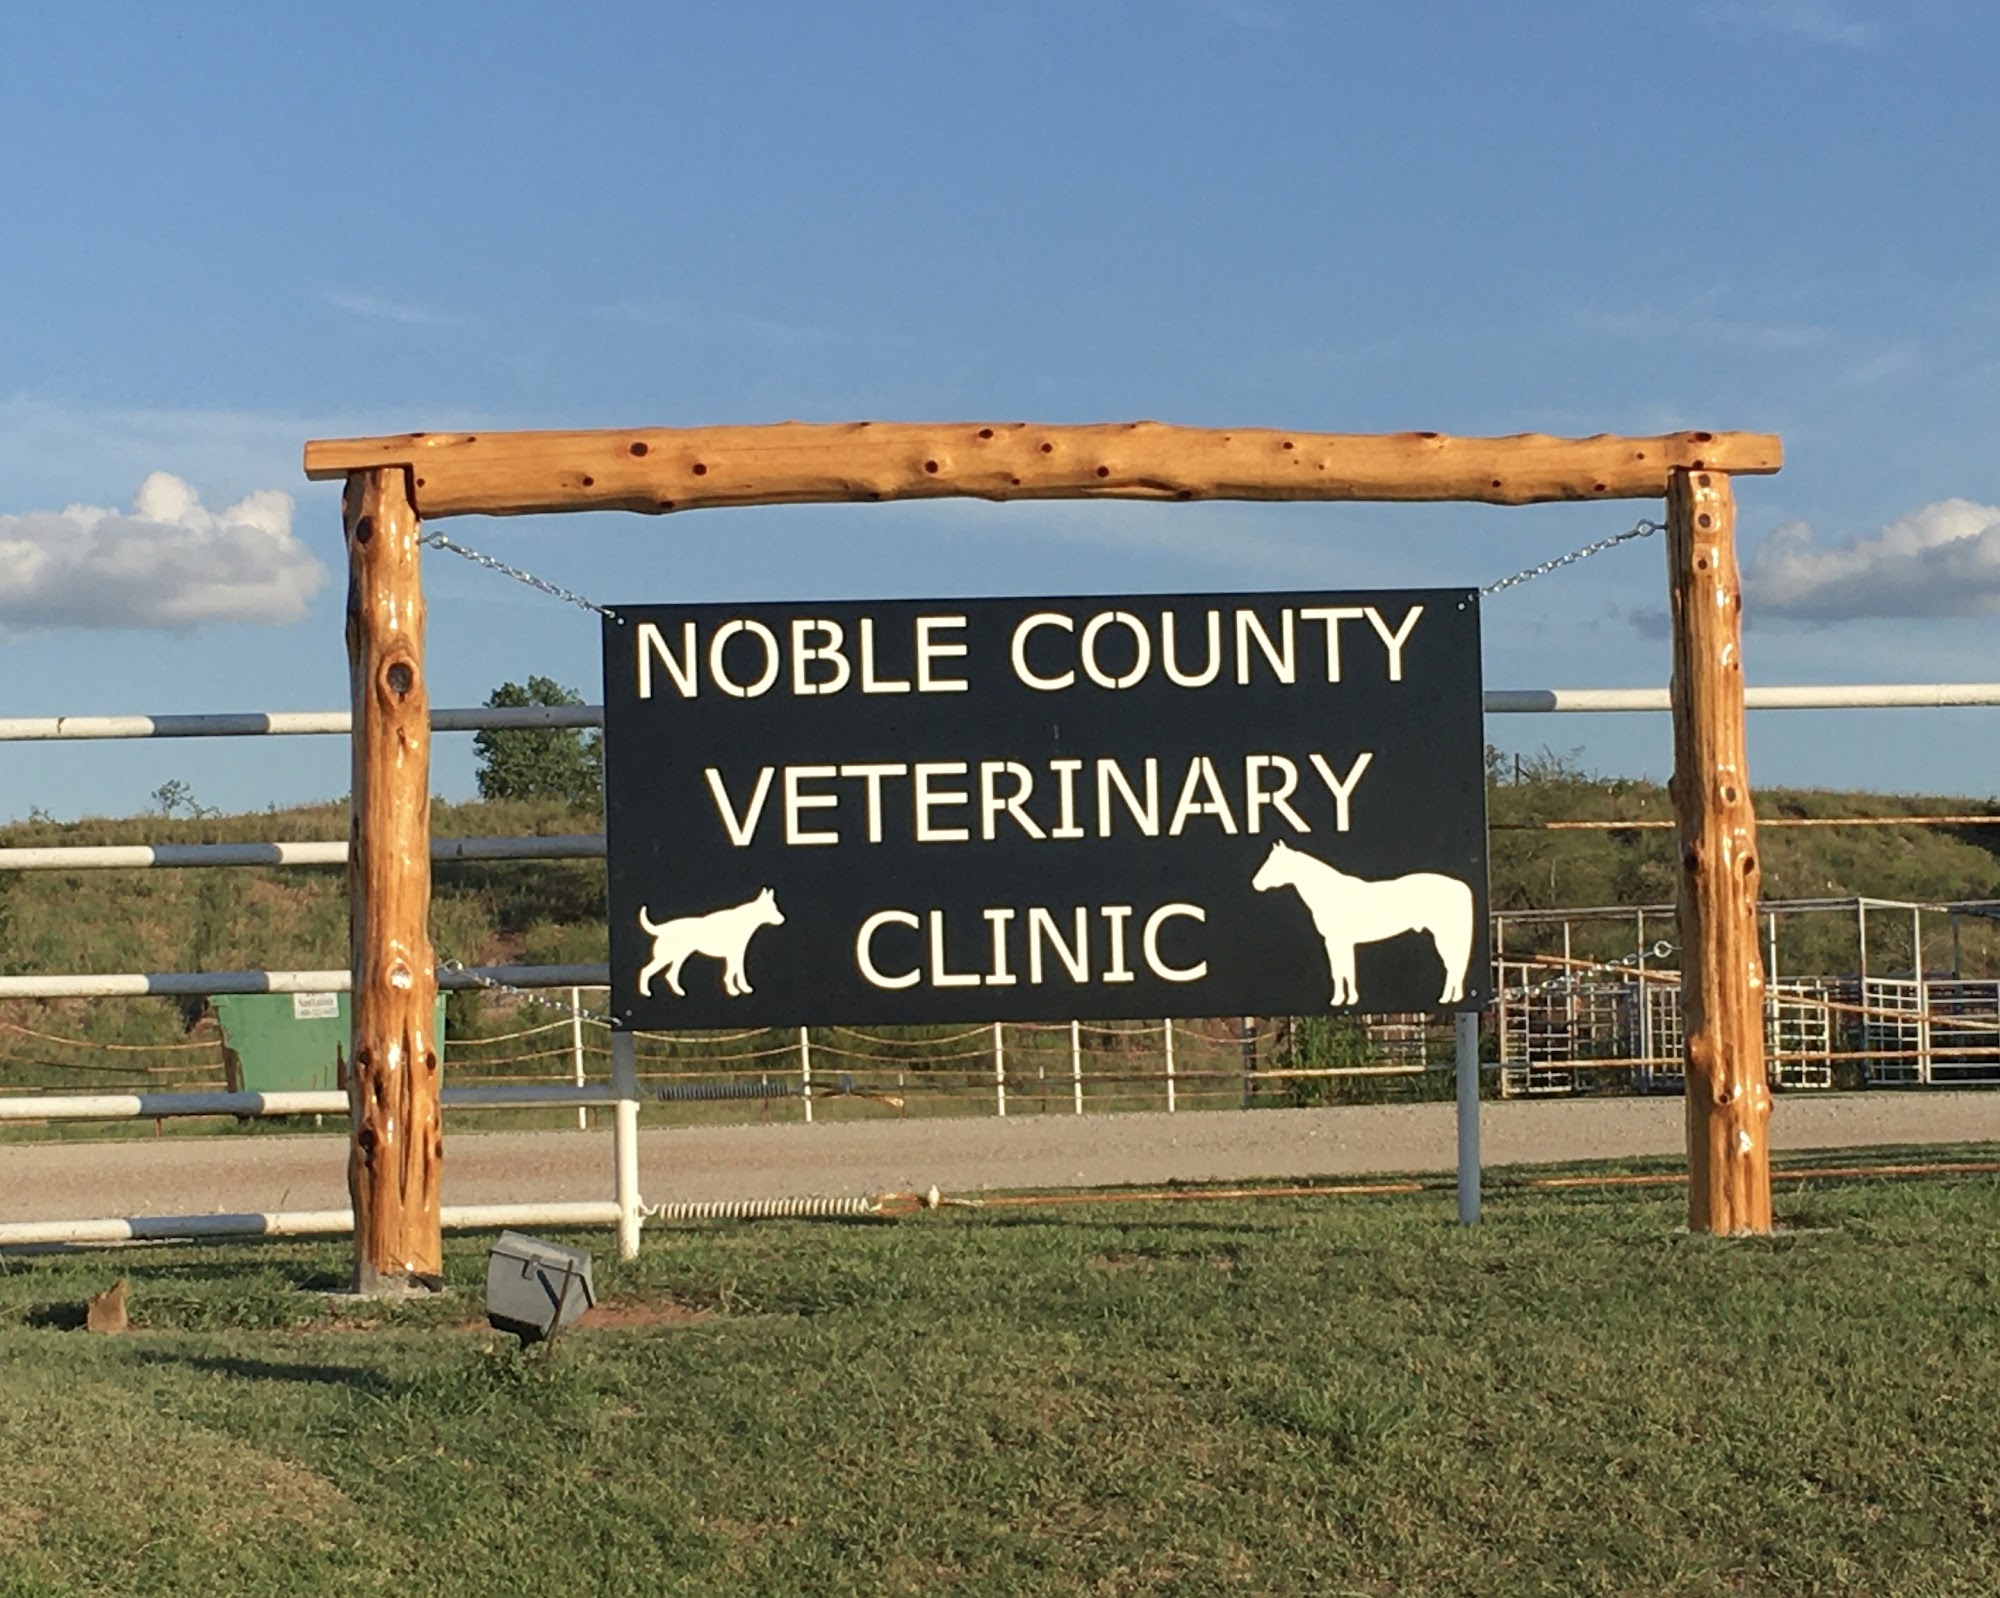 Noble County Veterinary Clinic 400 East Cedar St, Perry Oklahoma 73077